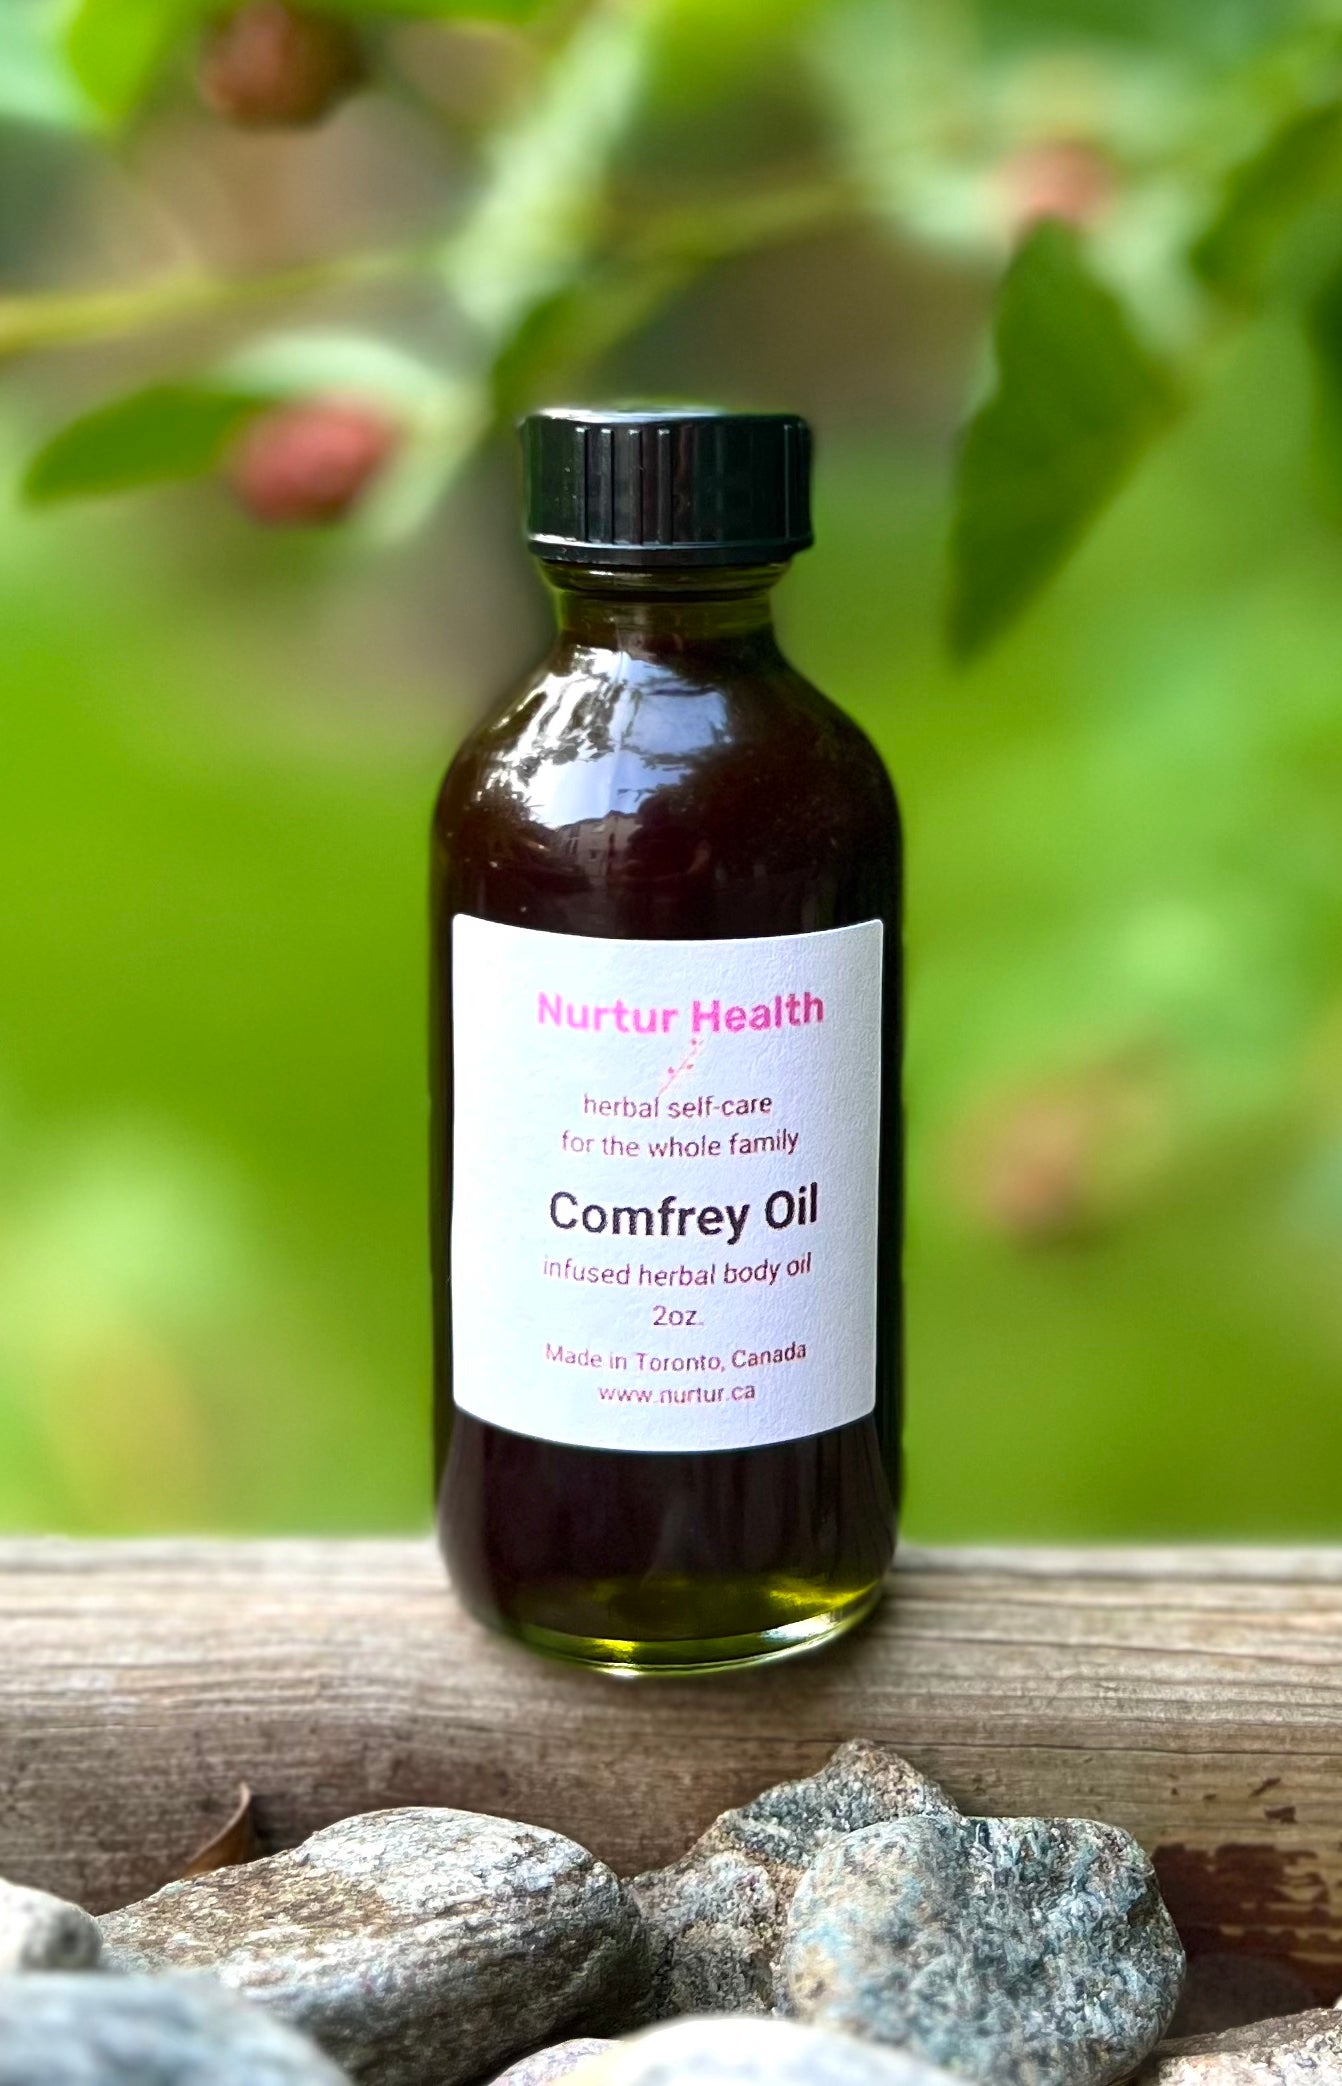 Comfrey Herbal Oil (Symphytum officinale leaf oil)